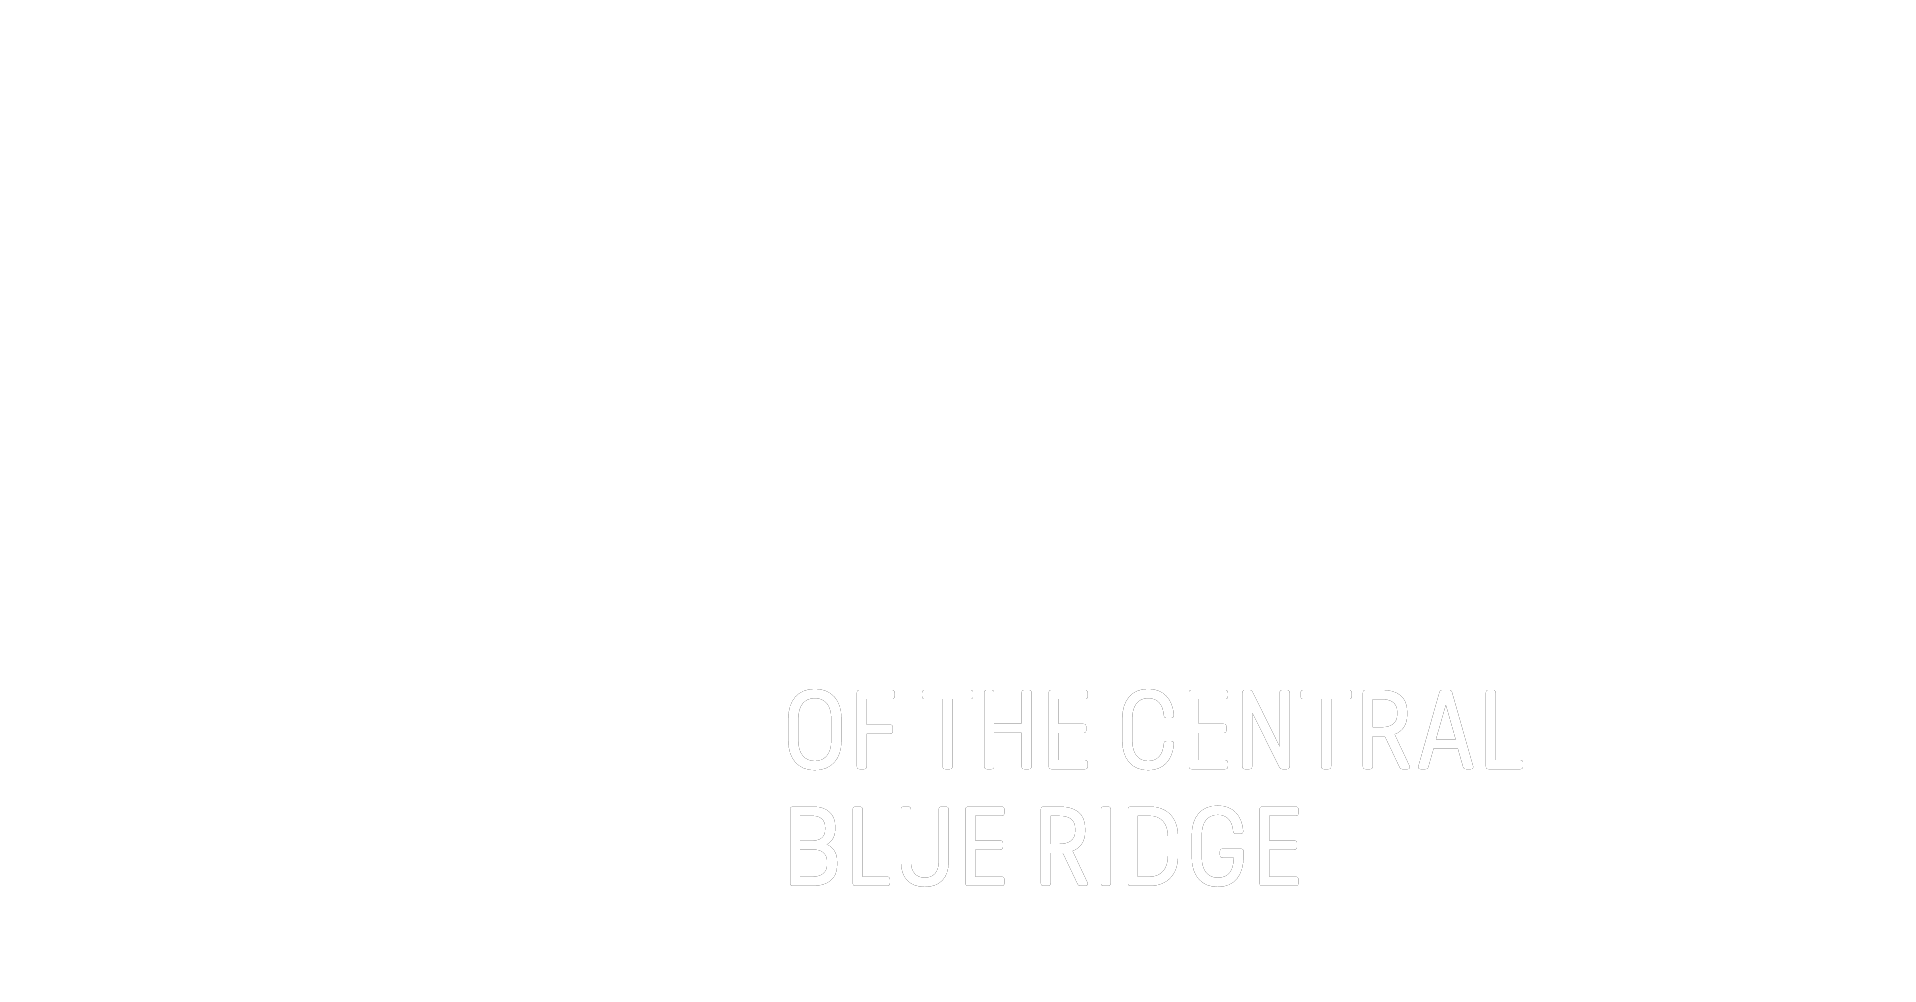 BBBSCBR Logo